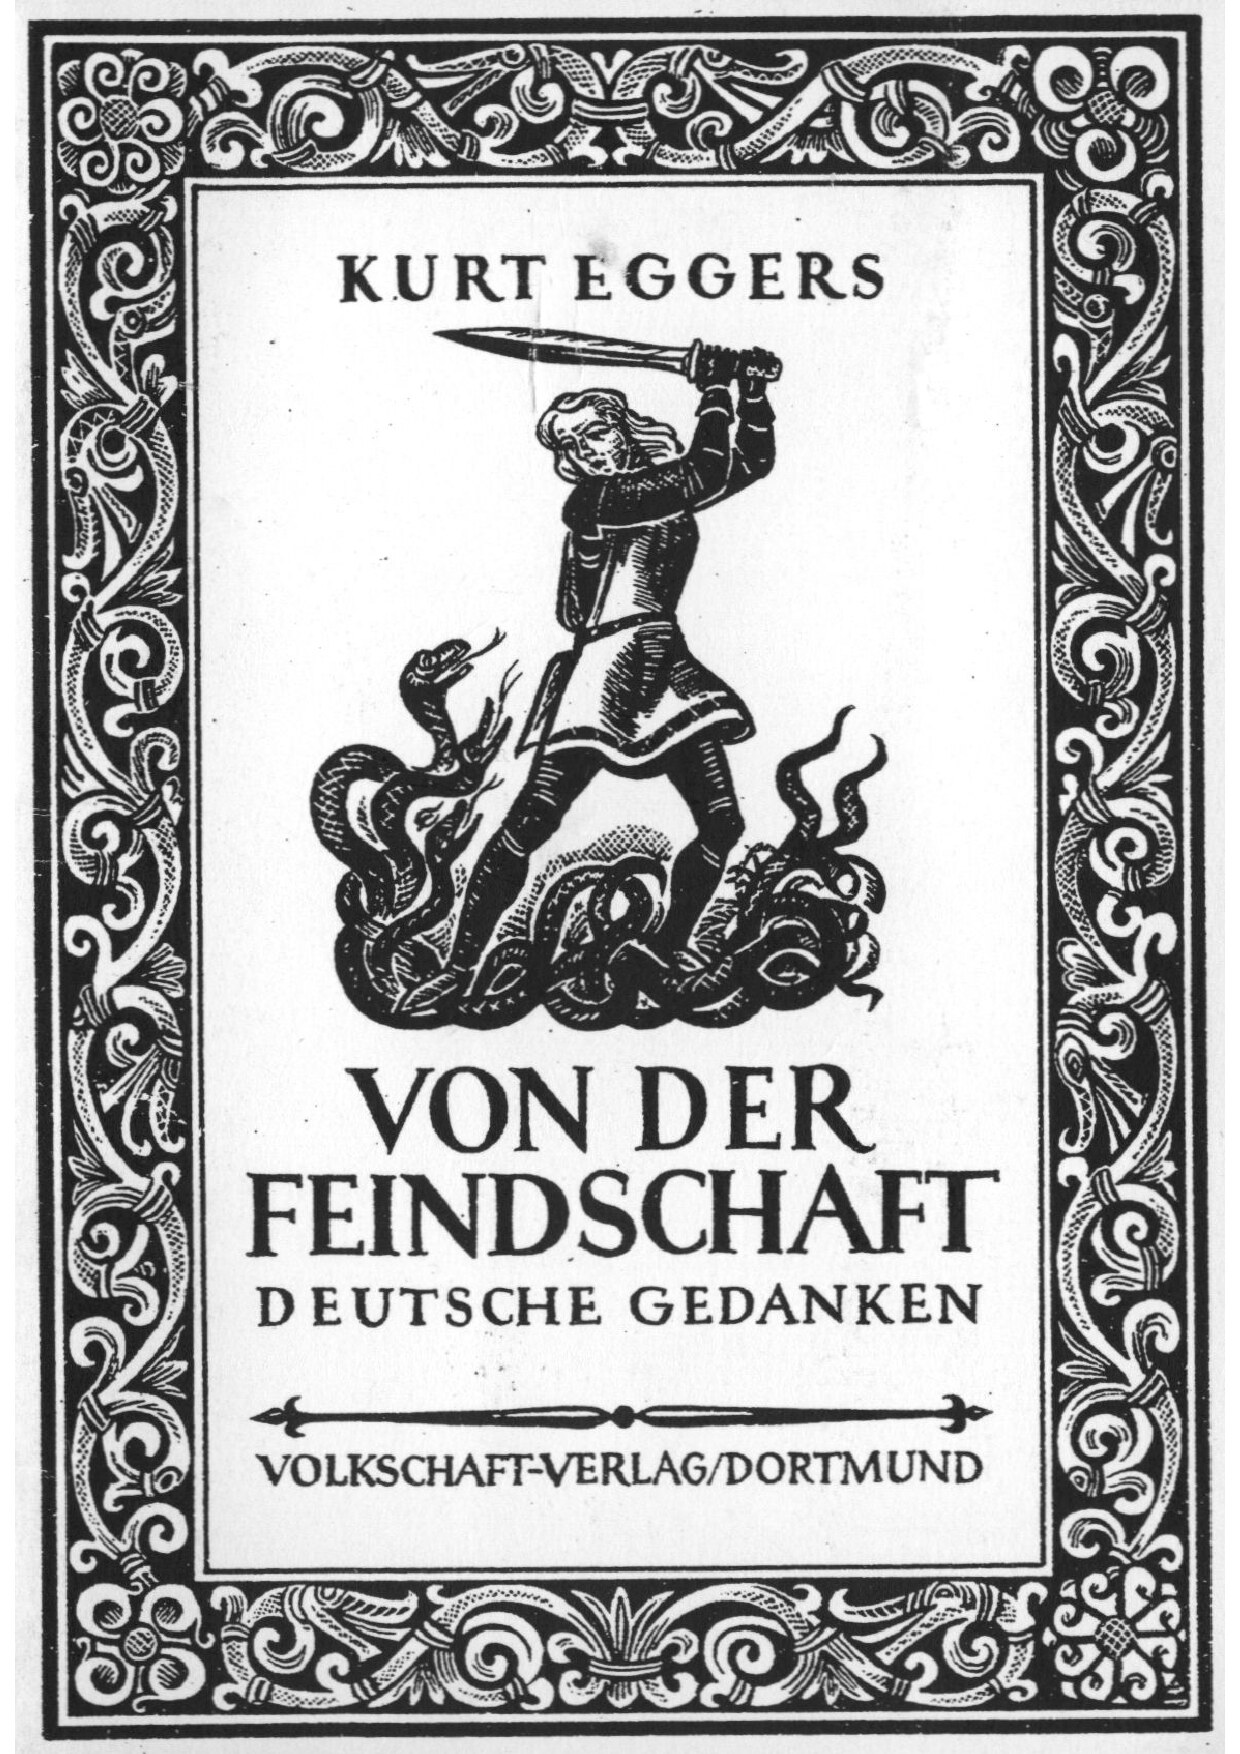 Von der Feindschaft - Deutsche Gedanken (1941, 48 S., Scan)